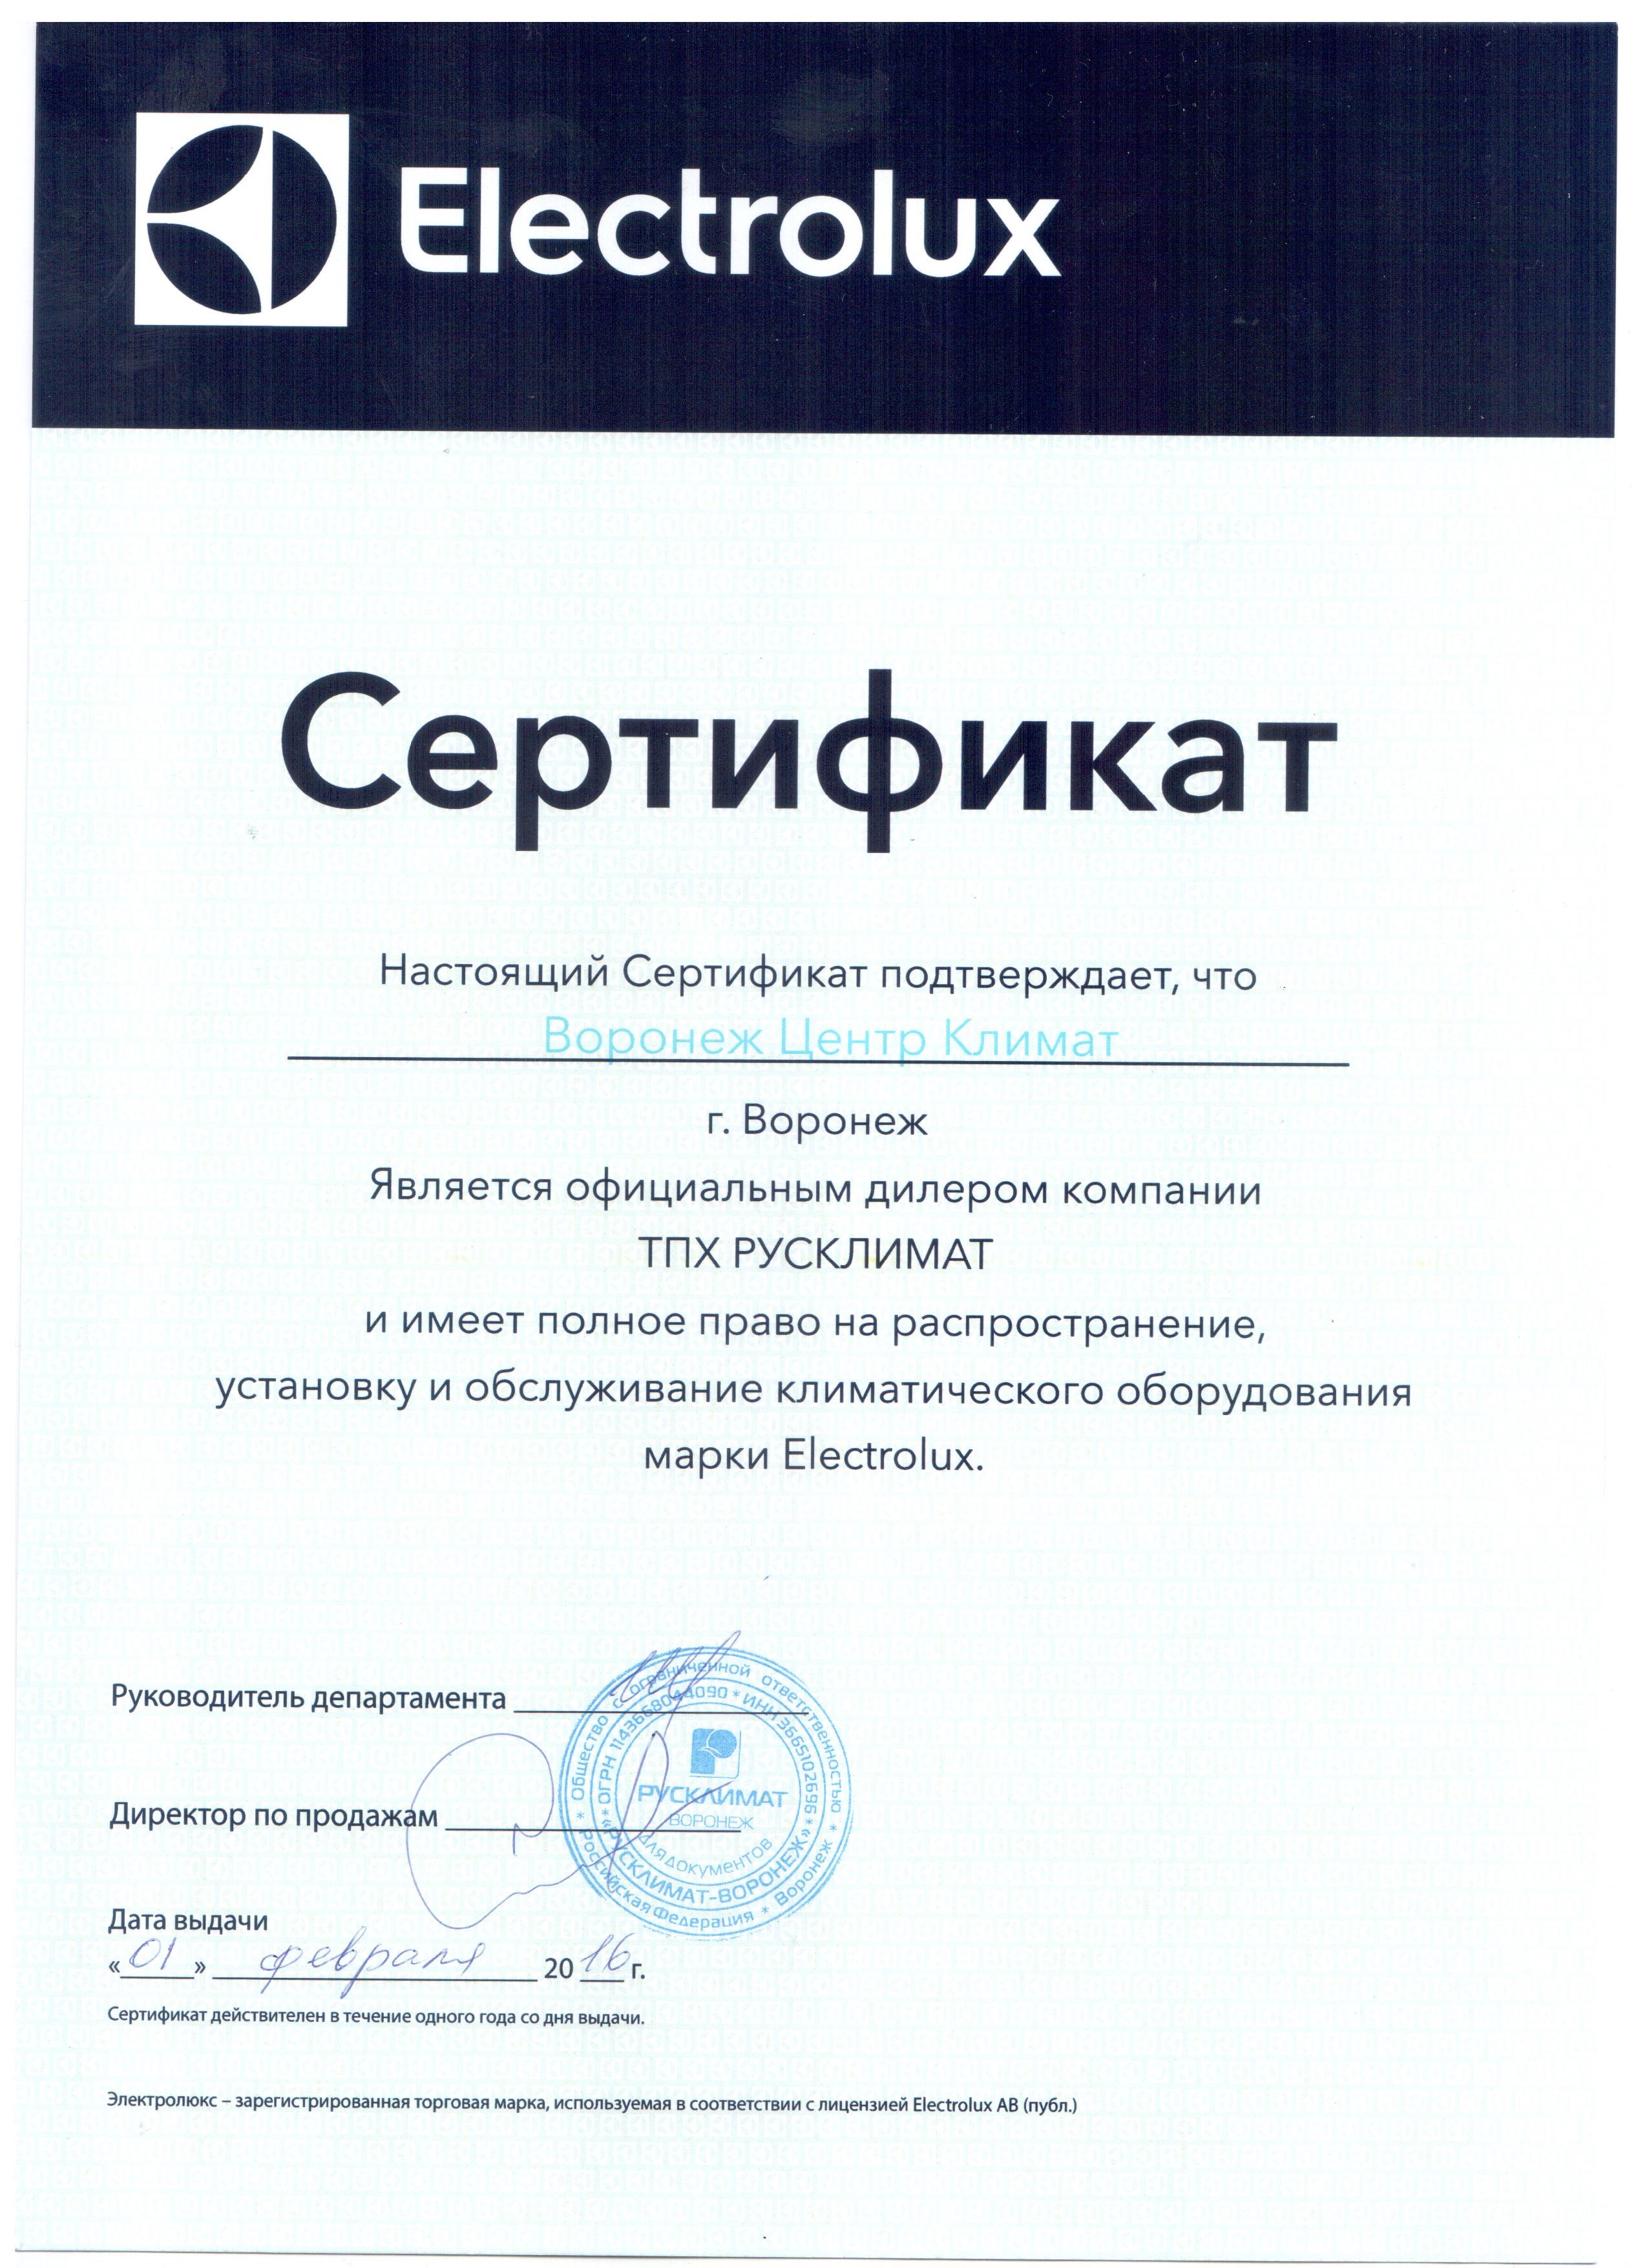 Нажмите на изображение, чтобы посмотреть сертификат Electrolux